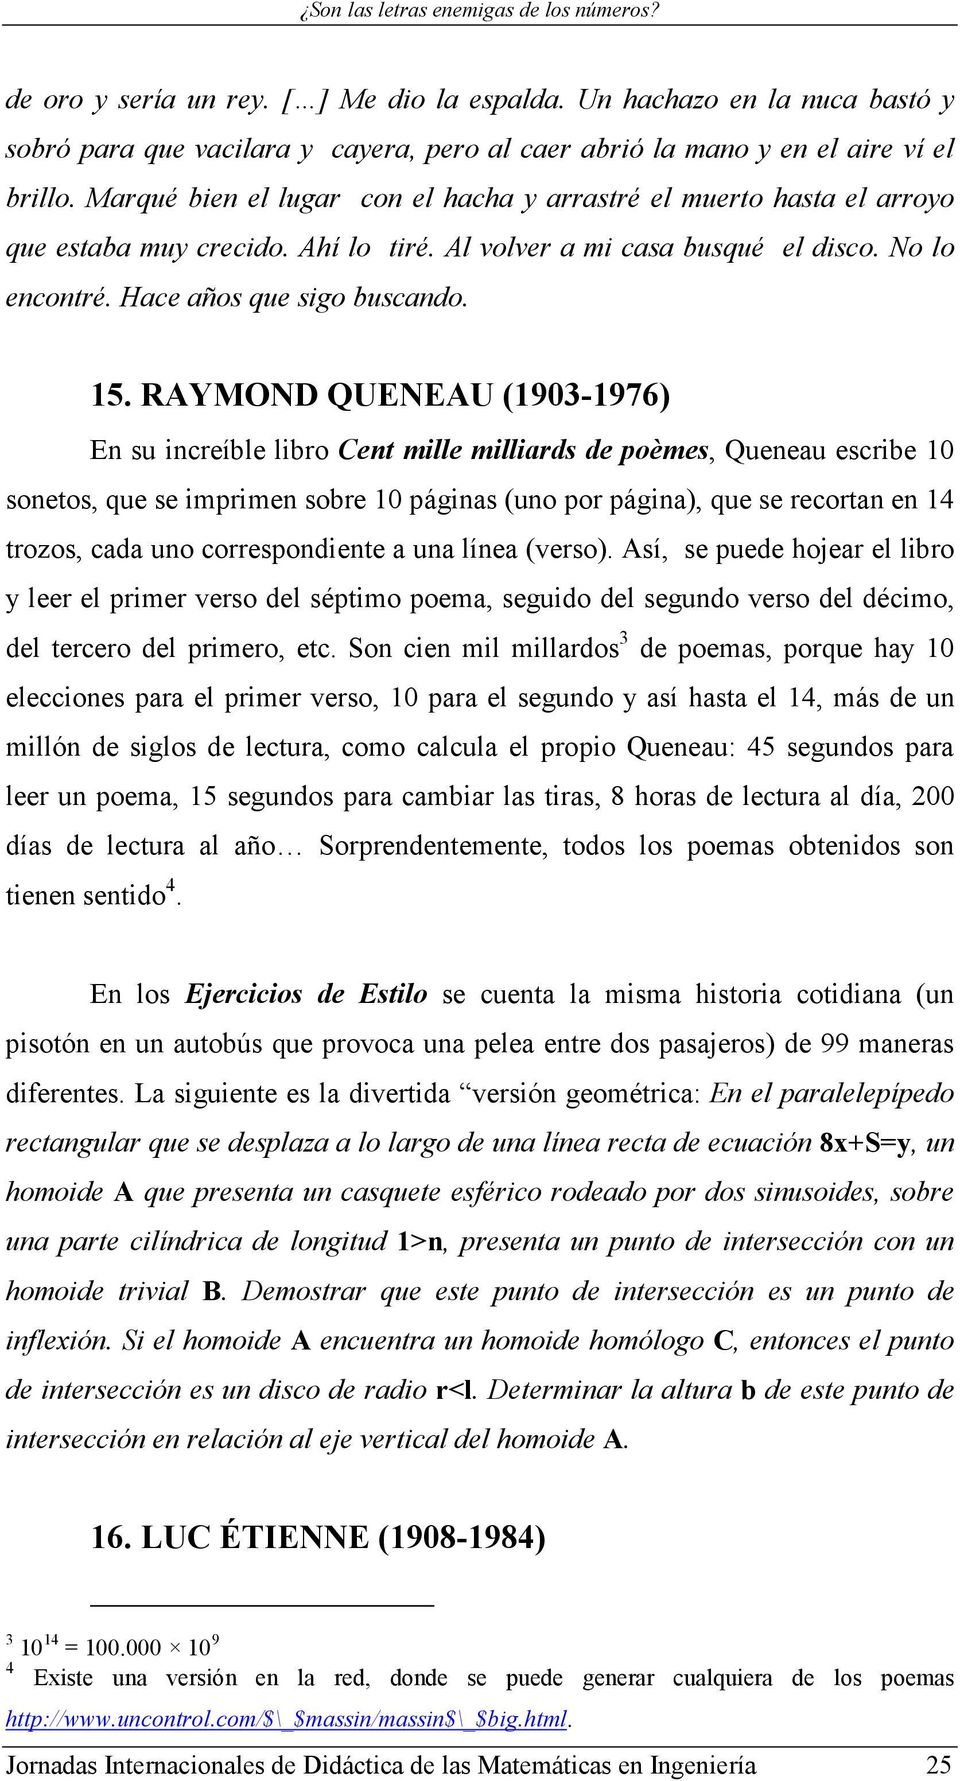 RAYMOND QUENEAU (1903-1976) En su increíble libro Cent mille milliards de poèmes, Queneau escribe 10 sonetos, que se imprimen sobre 10 páginas (uno por página), que se recortan en 14 trozos, cada uno